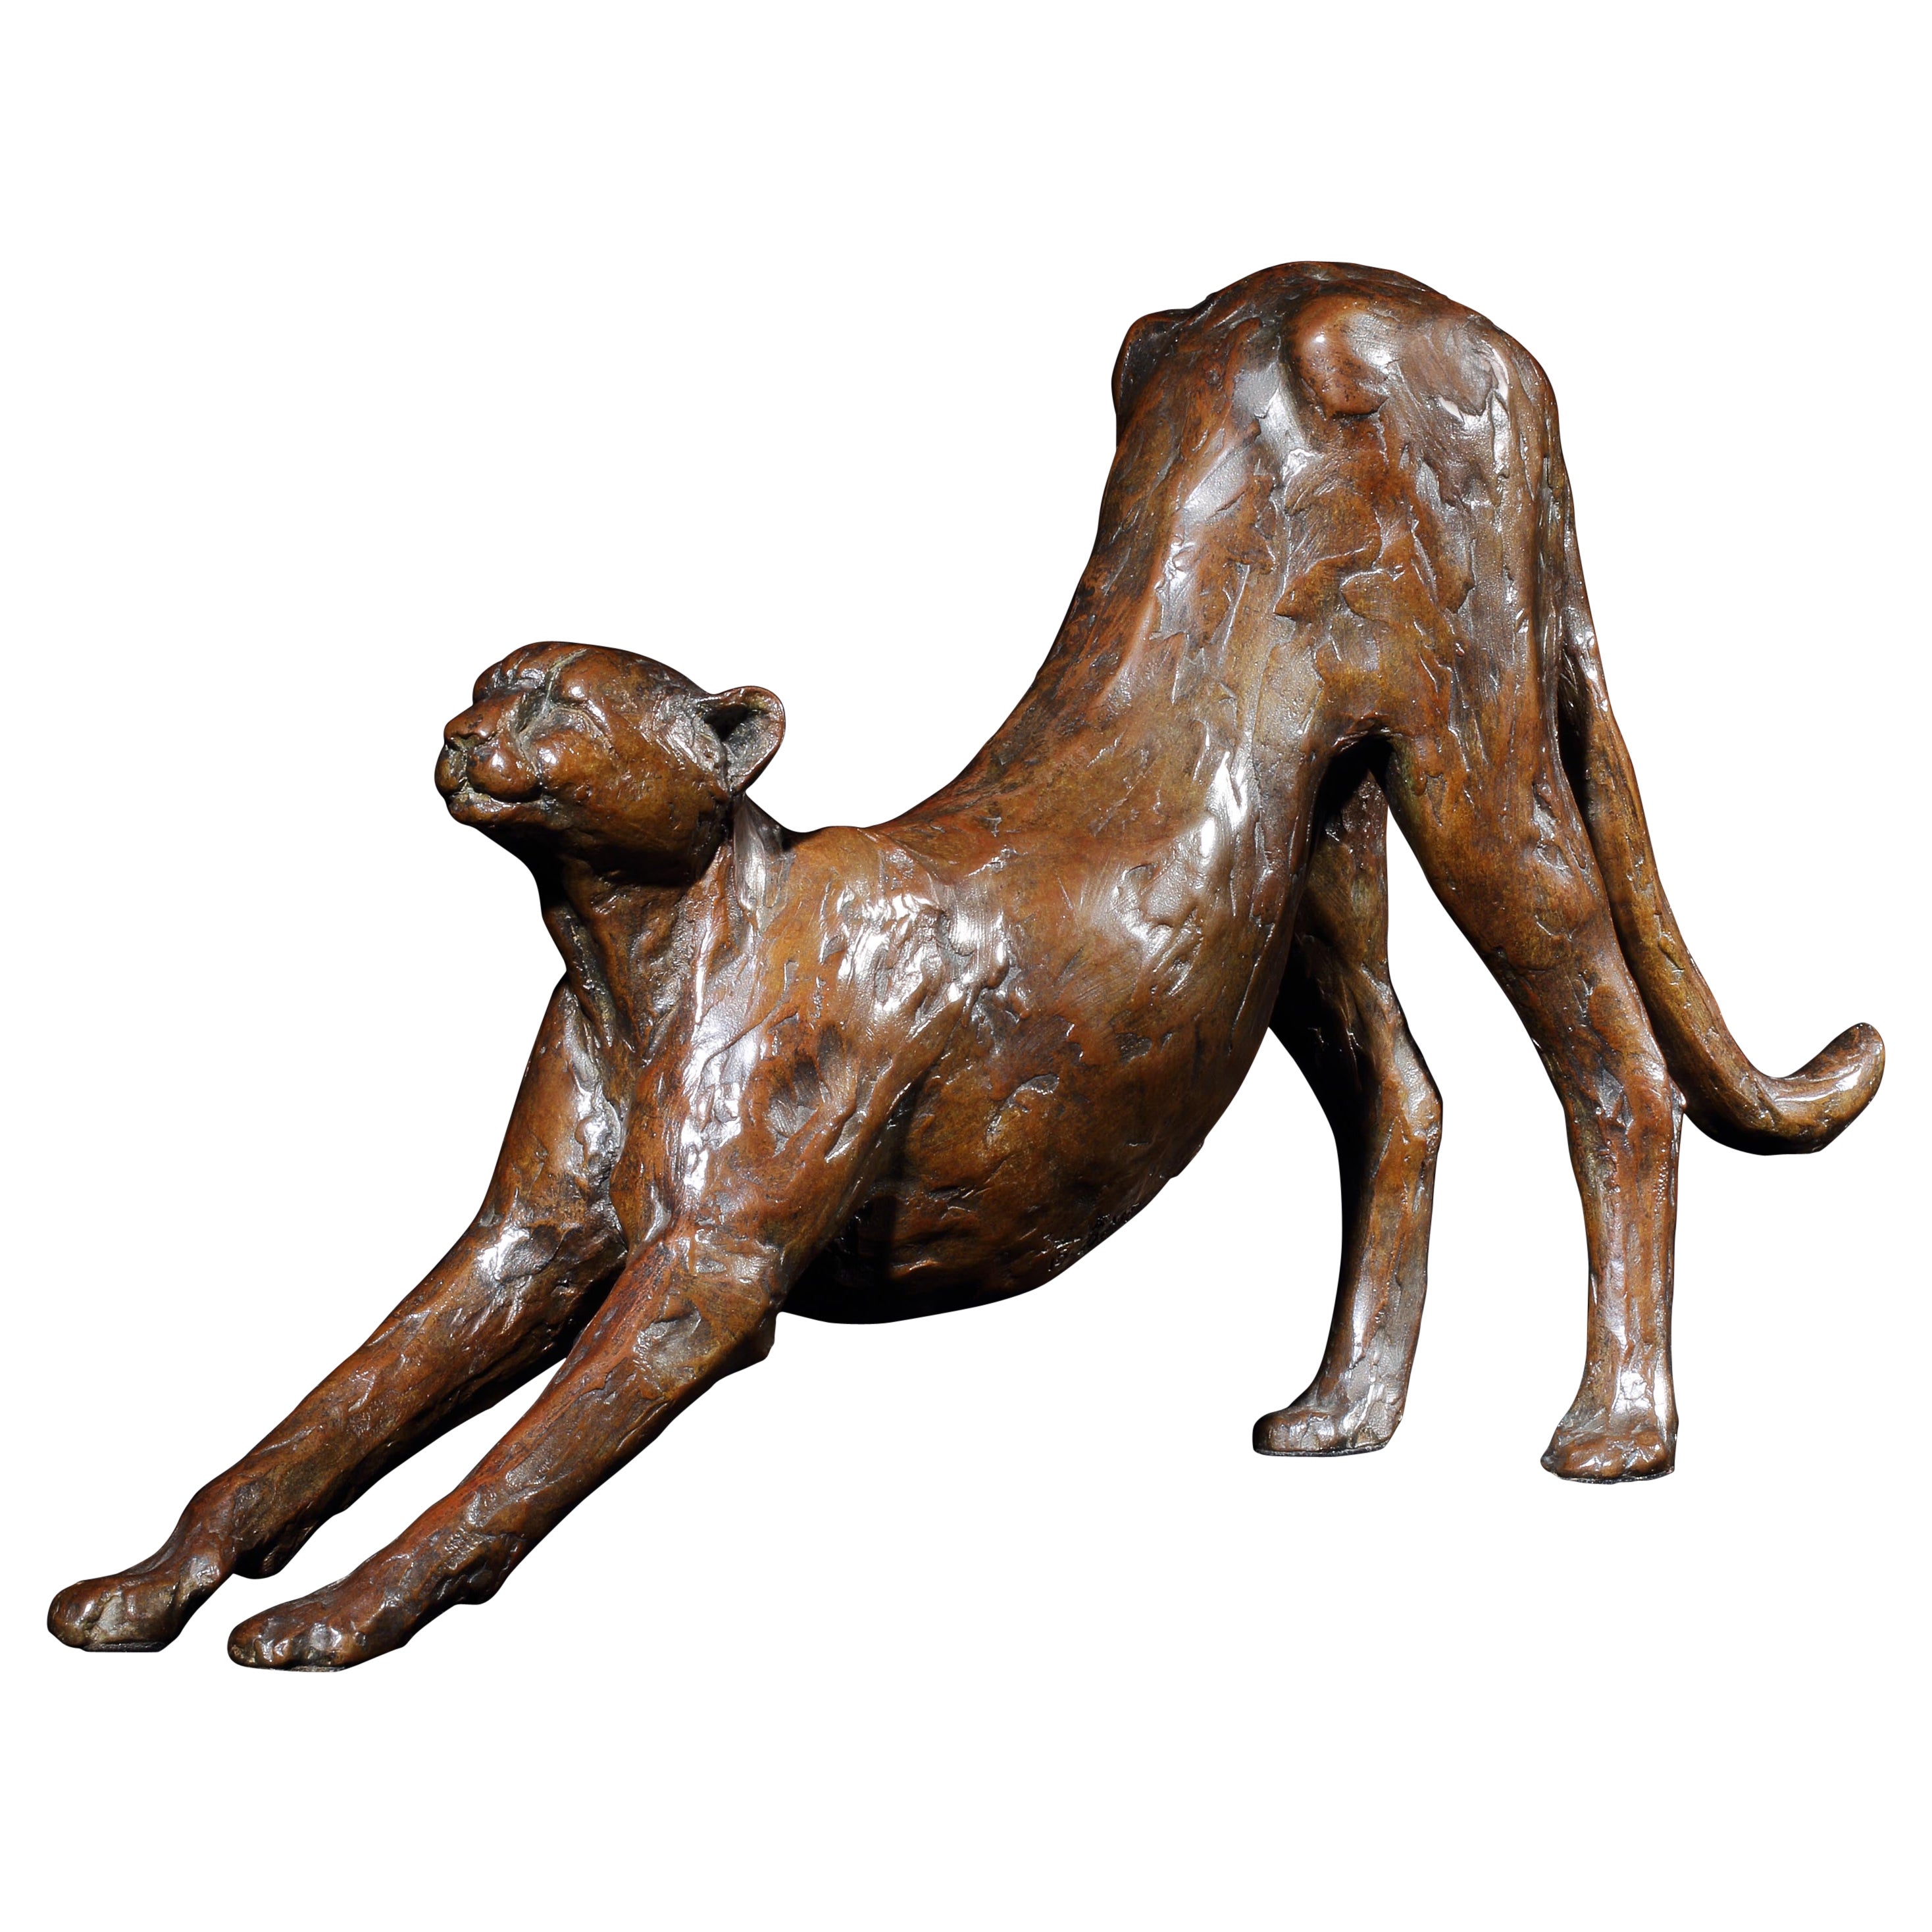 Maquette de sculpture en bronze Ingwe FoundryS31 en forme de guépard extensible 3/15 Monogramme BMR 